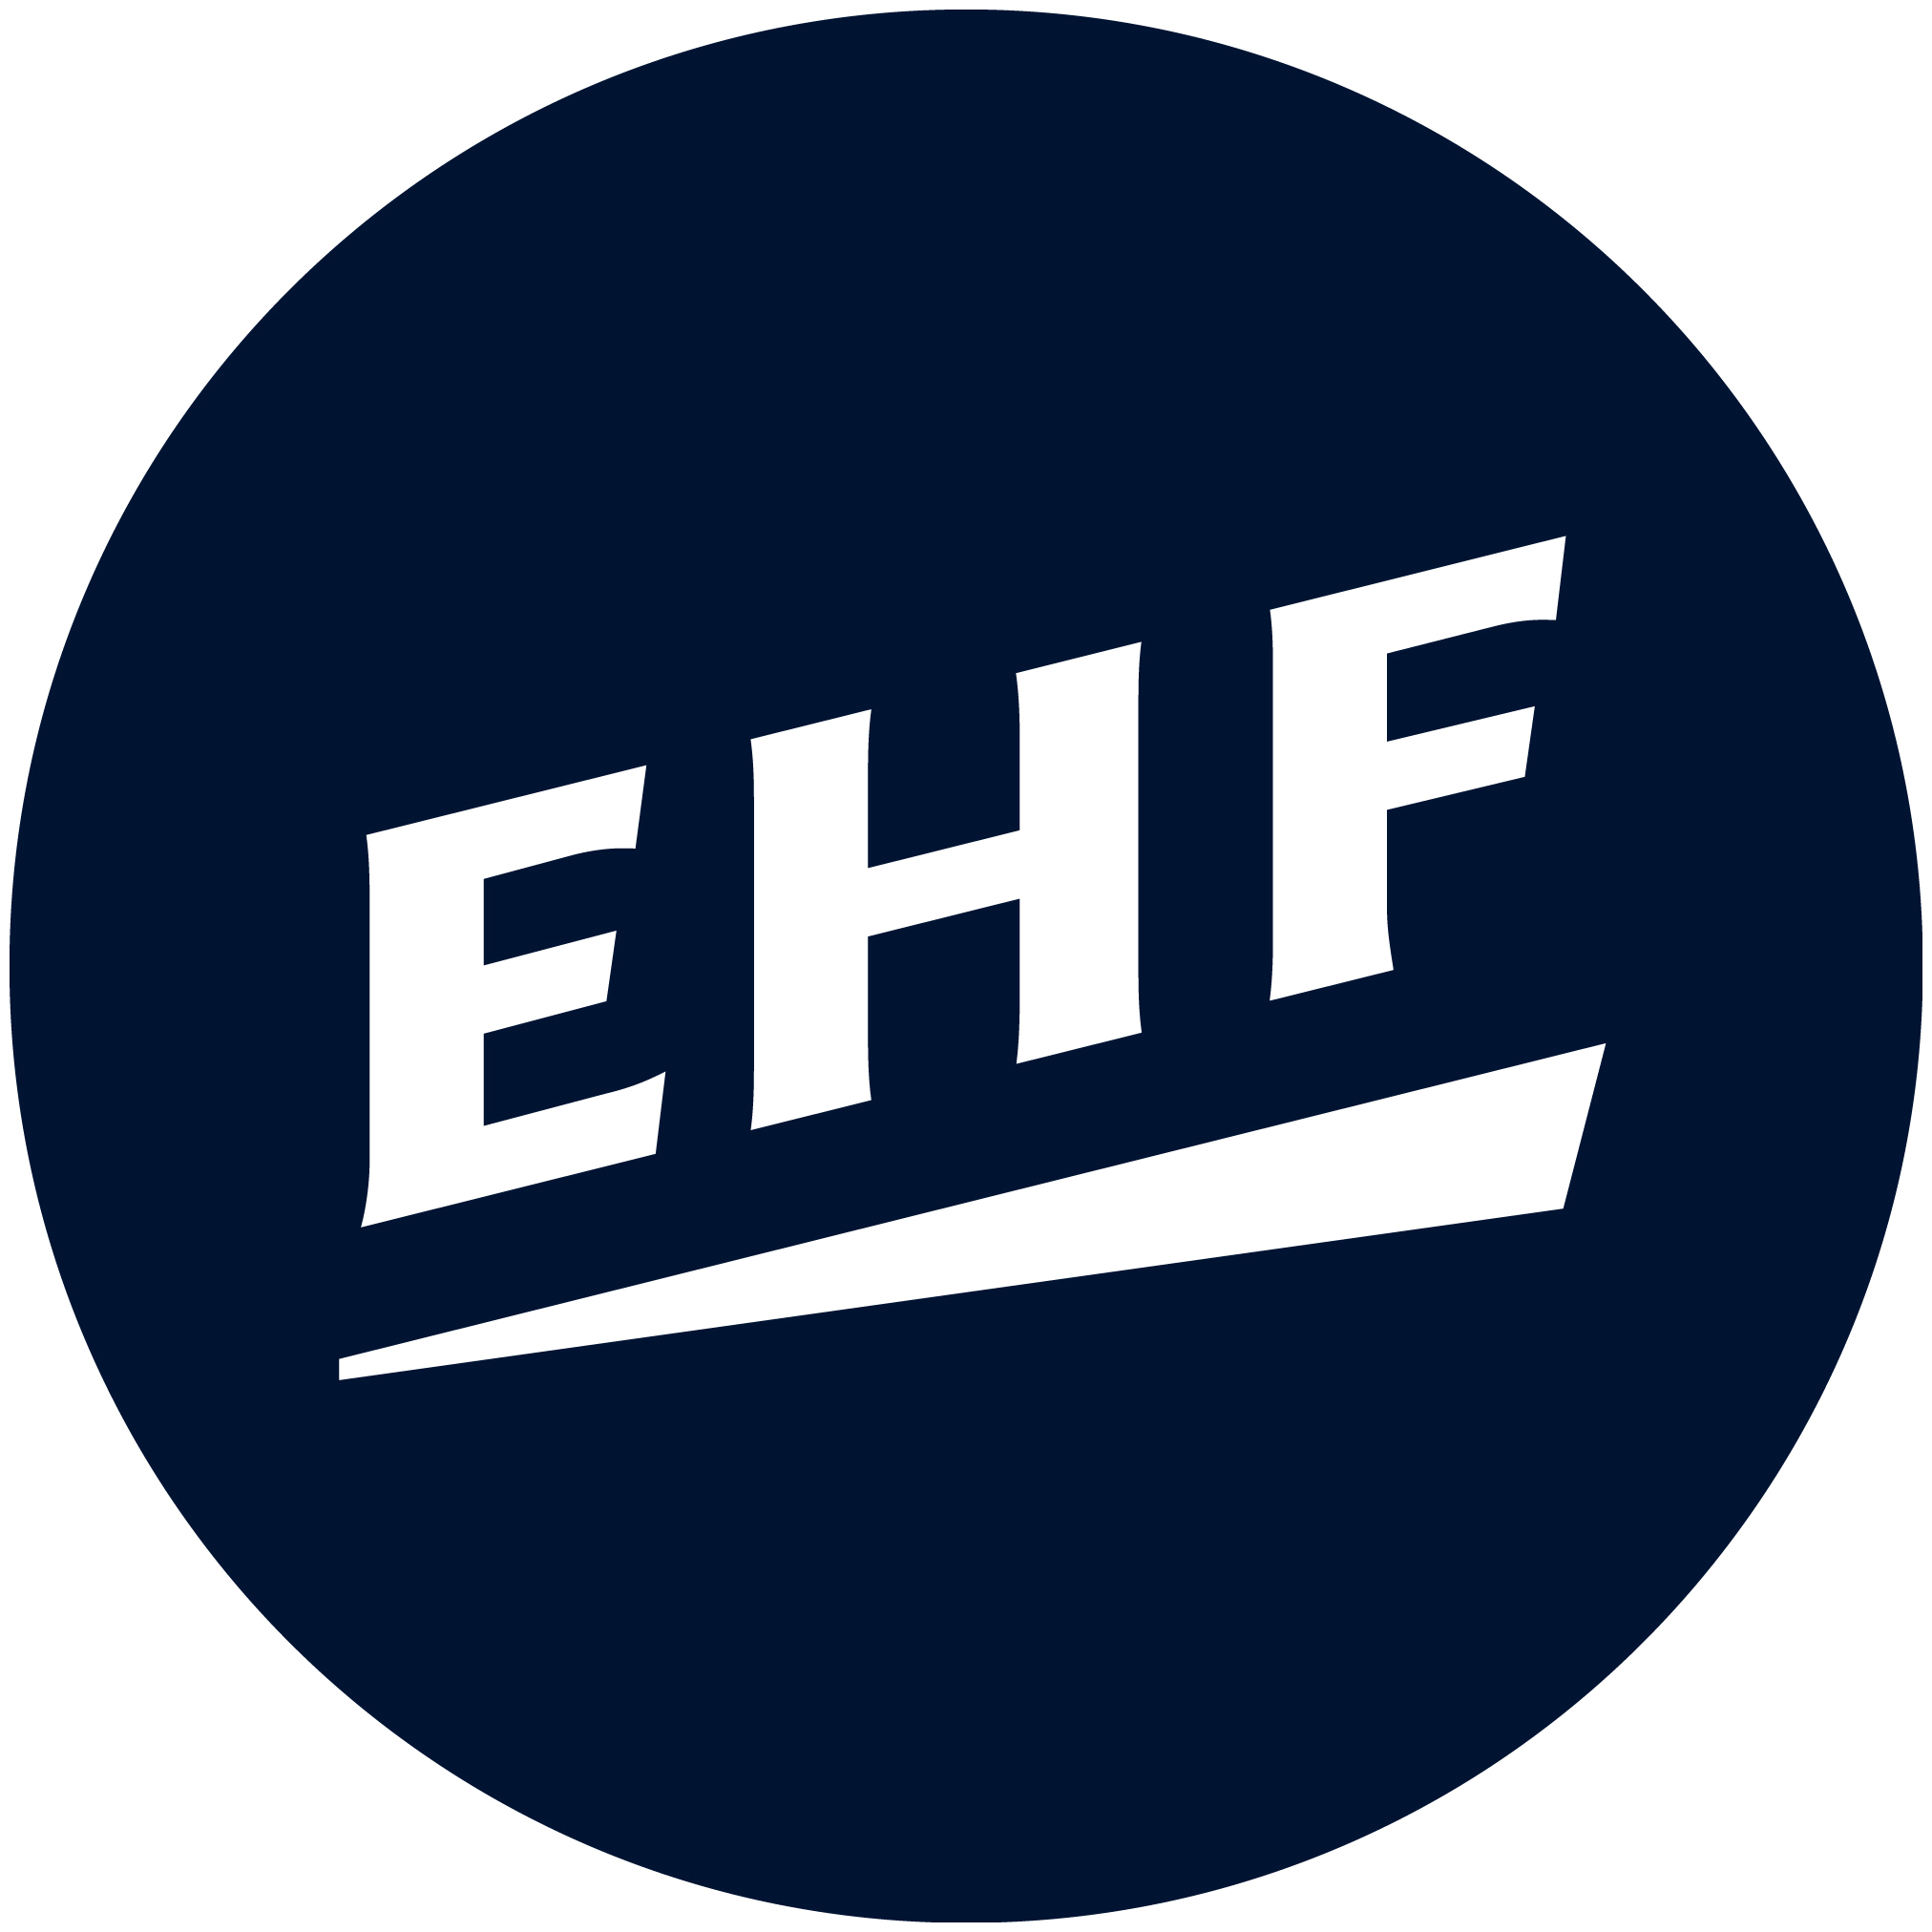 2014 European Handball Men's 20 EHF EURO